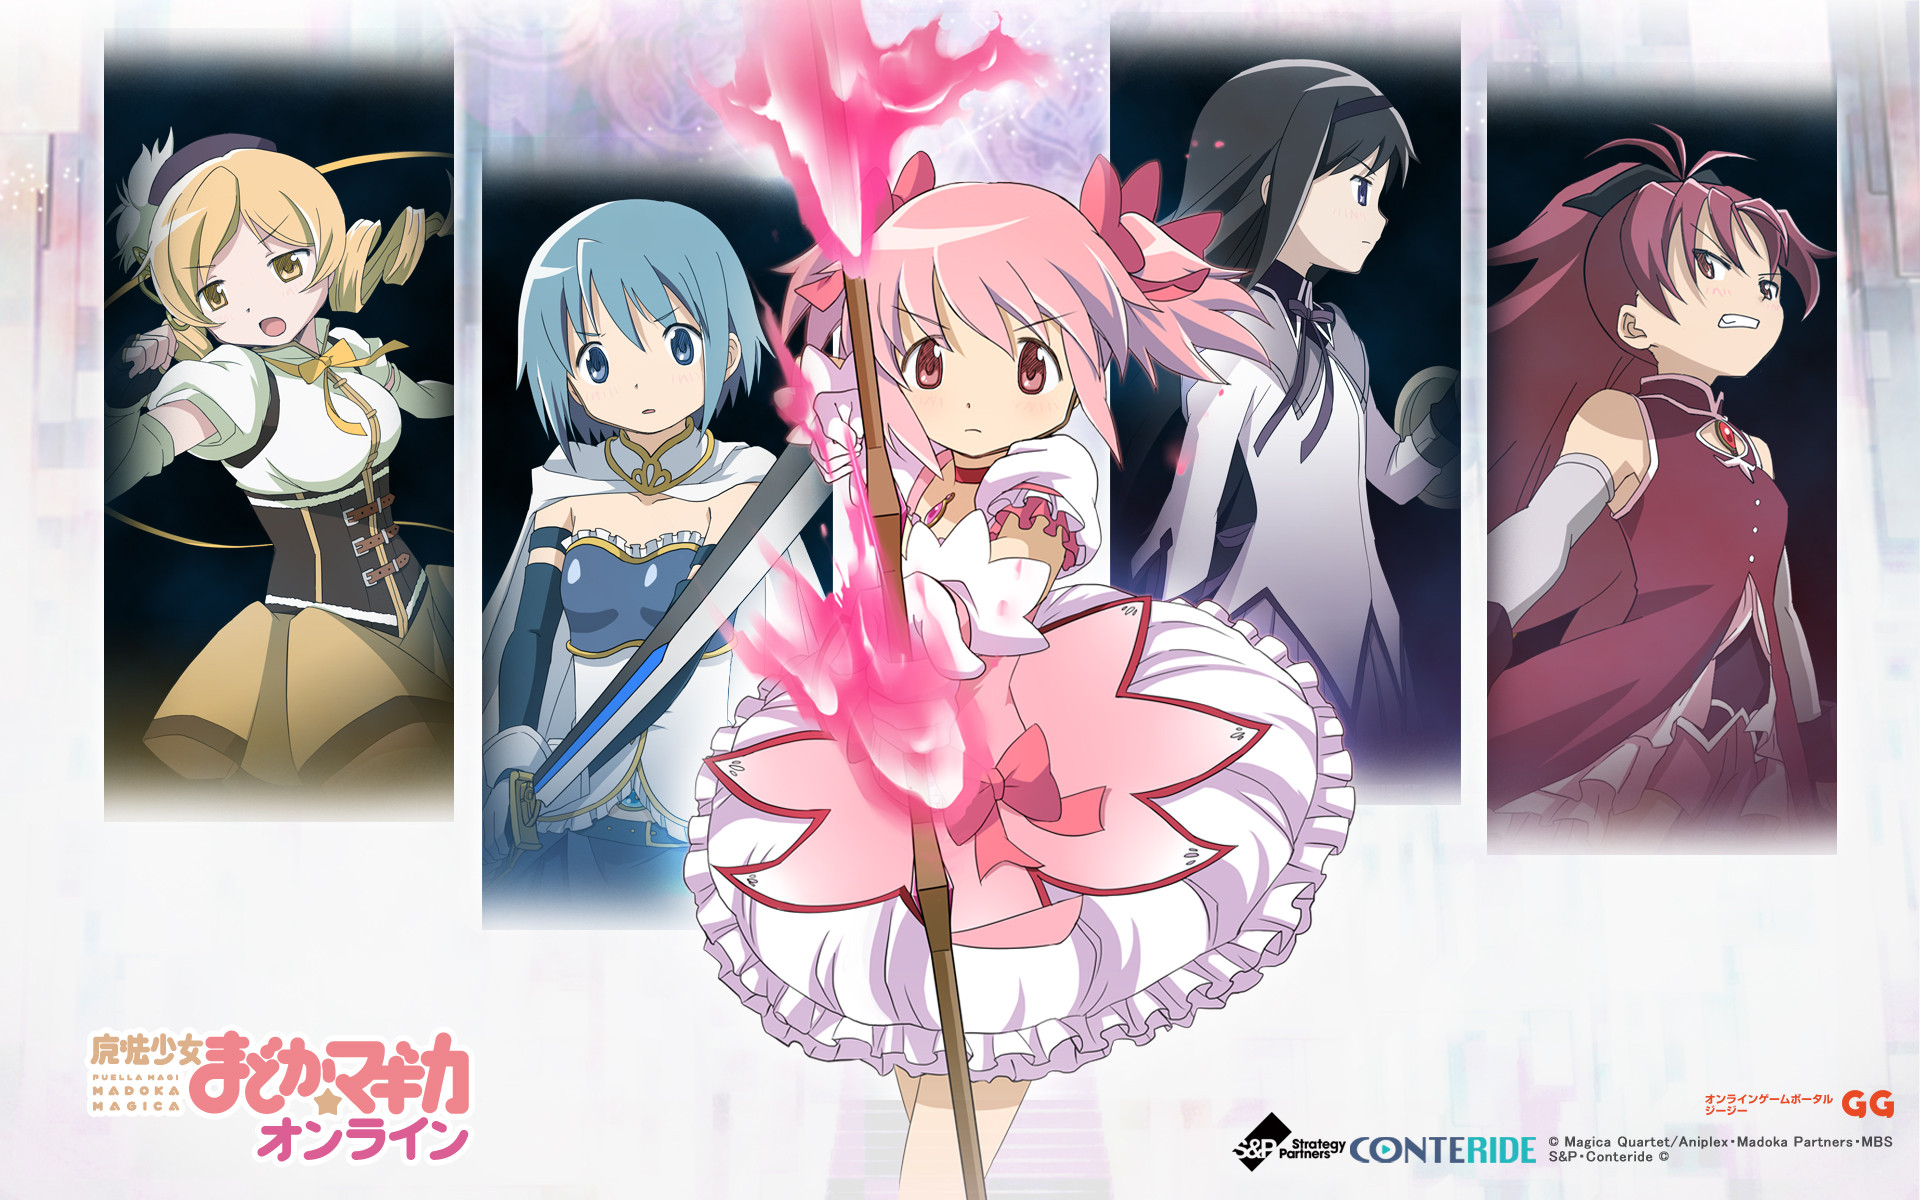 Descarga gratis la imagen Animado, Kyōko Sakura, Puella Magi Madoka Magica, Homura Akemi, Madoka Kaname, Mami Tomoe, Sayaka Miki en el escritorio de tu PC